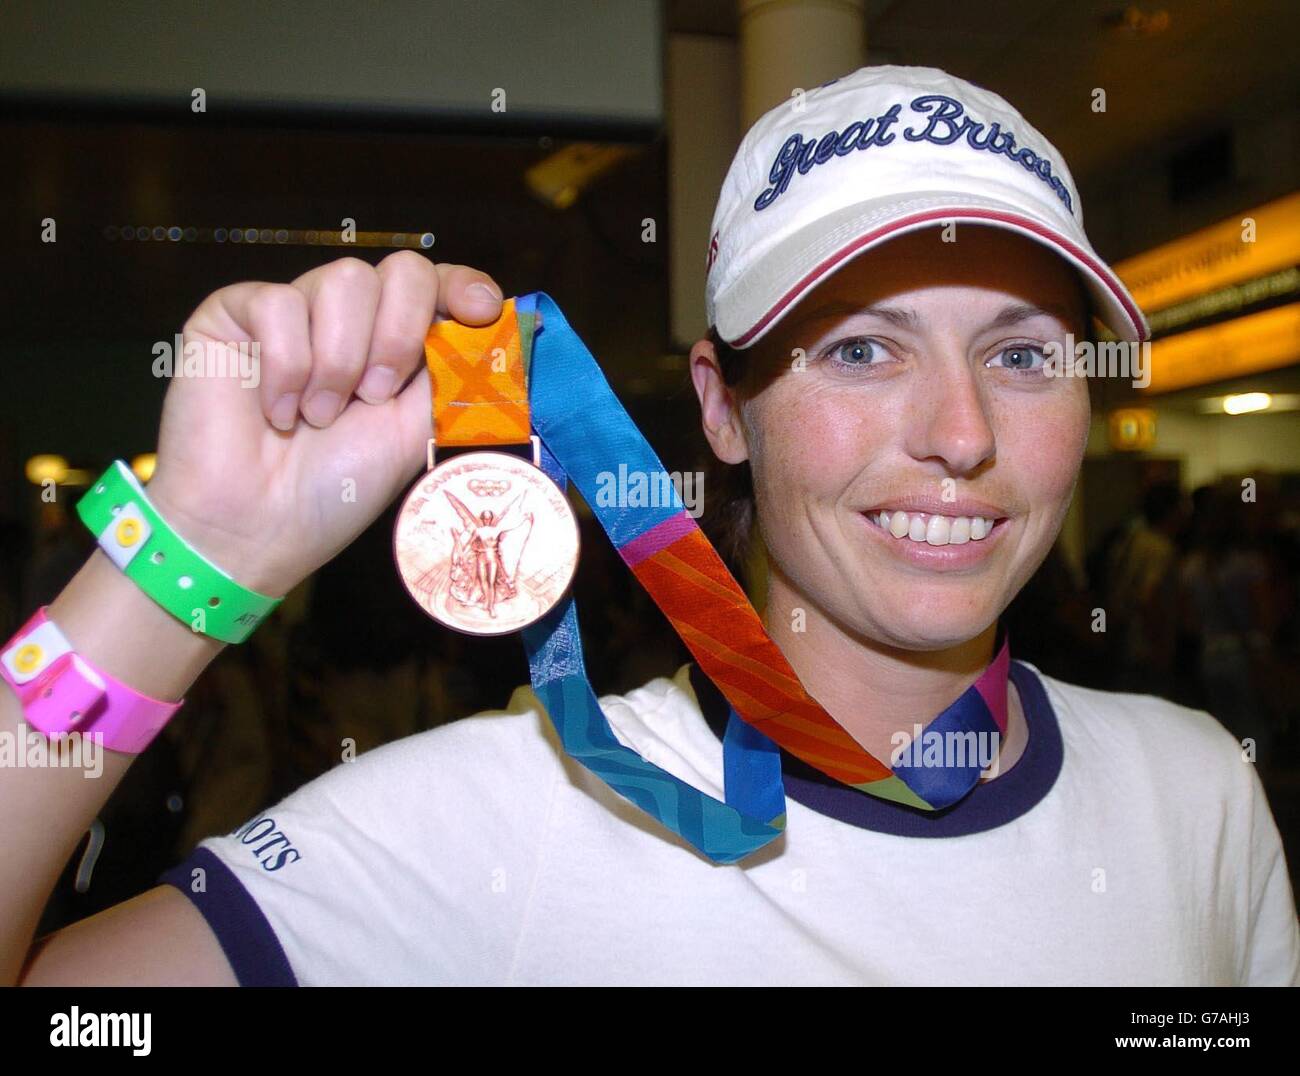 Jeanette Brakewell la medallista ecuestre de bronce de los Juegos Olímpicos de Atenas llega al aeropuerto de Heathrow. Foto de stock